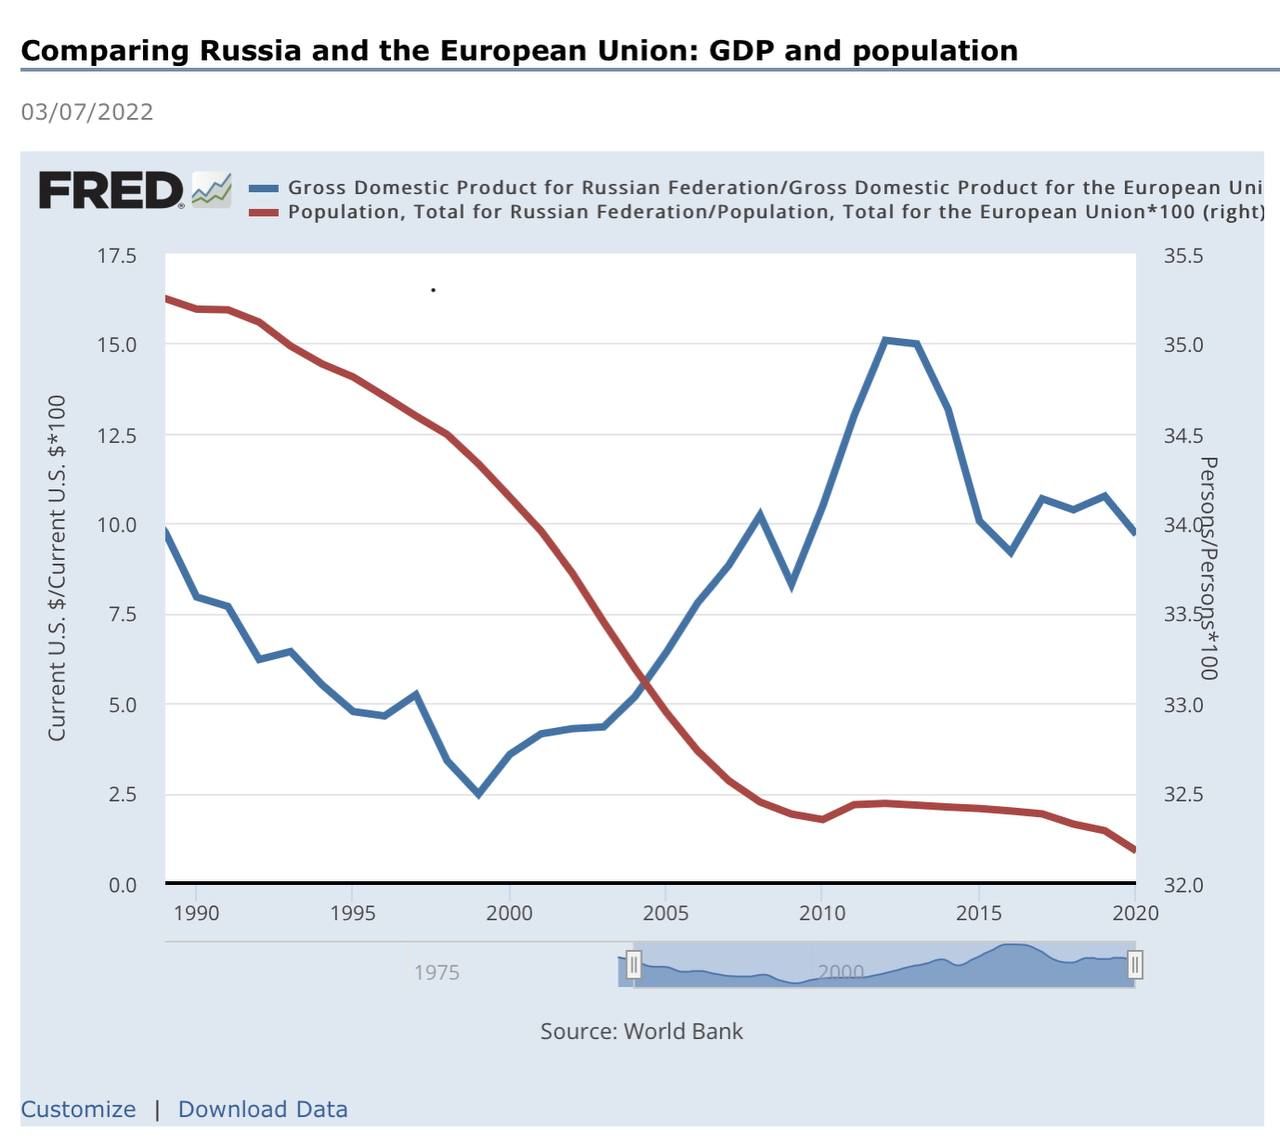 مقایسه اقتصاد و جمعیت روسیه و اتحادیه اروپا و روند آن

